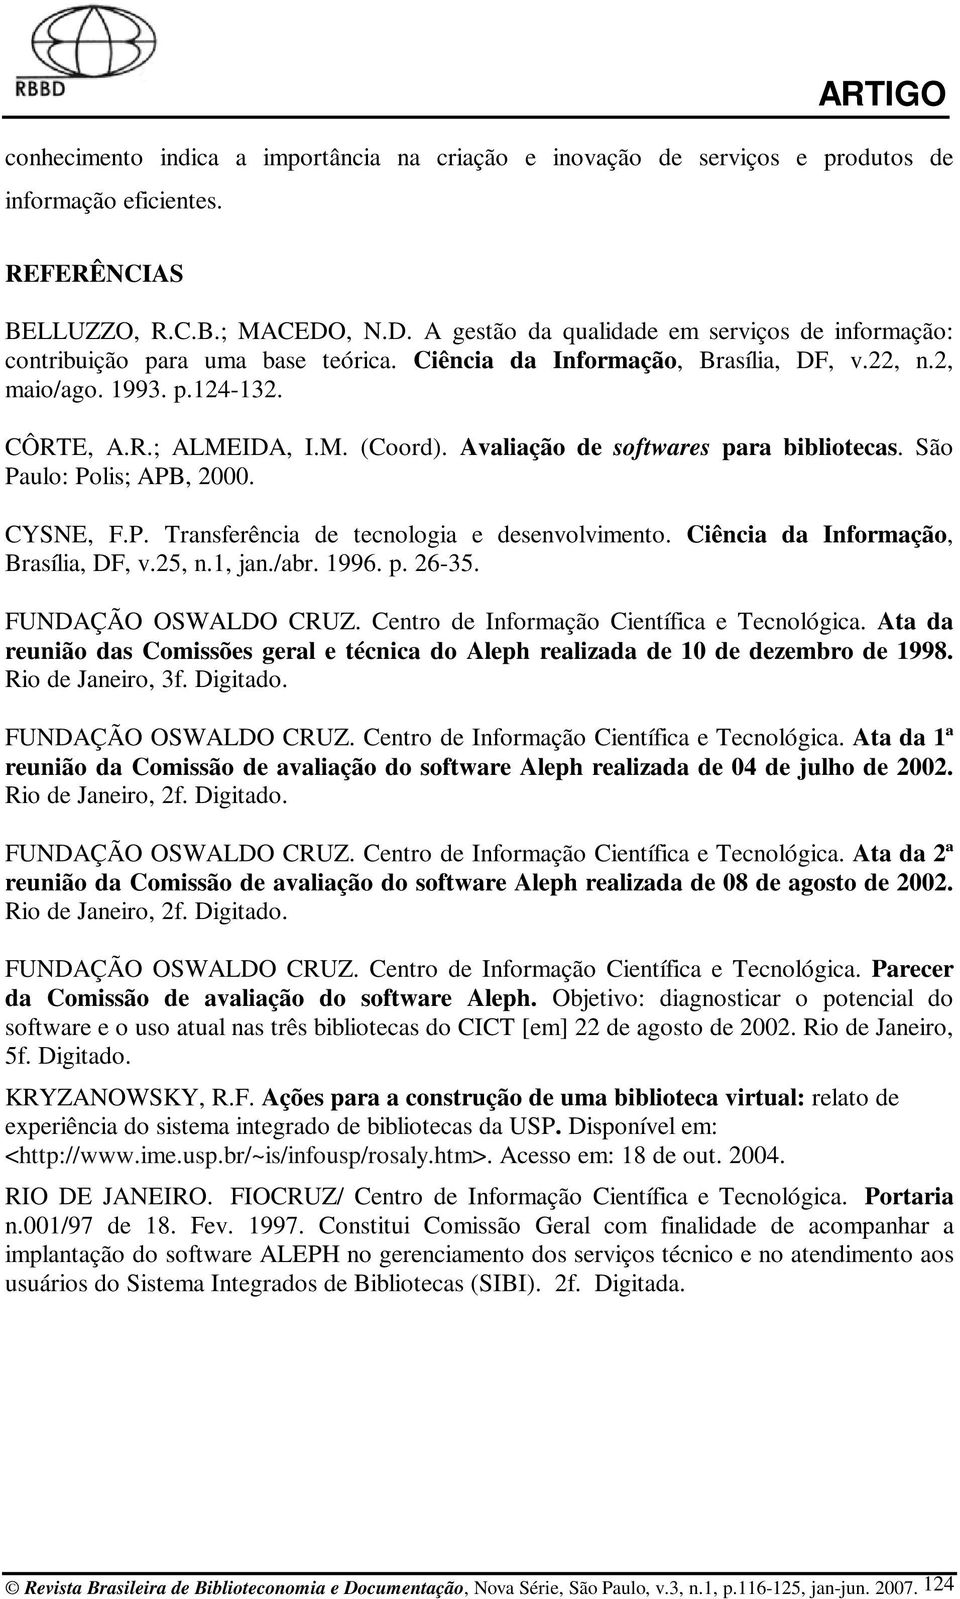 Avaliação de softwares para bibliotecas. São Paulo: Polis; APB, 2000. CYSNE, F.P. Transferência de tecnologia e desenvolvimento. Ciência da Informação, Brasília, DF, v.25, n.1, jan./abr. 1996. p. 26-35.